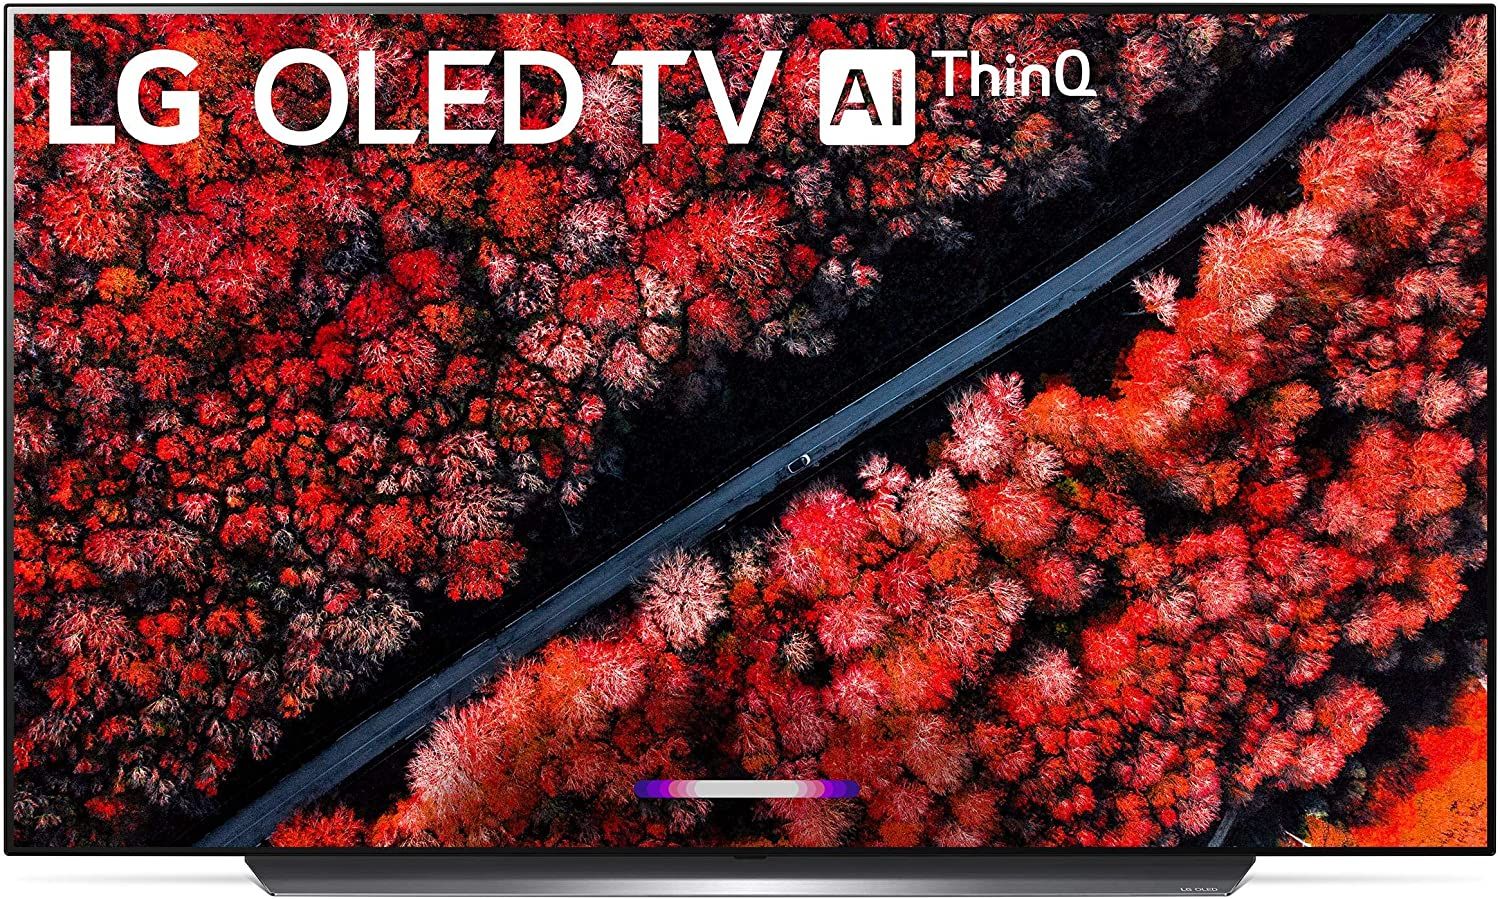 LG C9 Series Smart OLED TV a